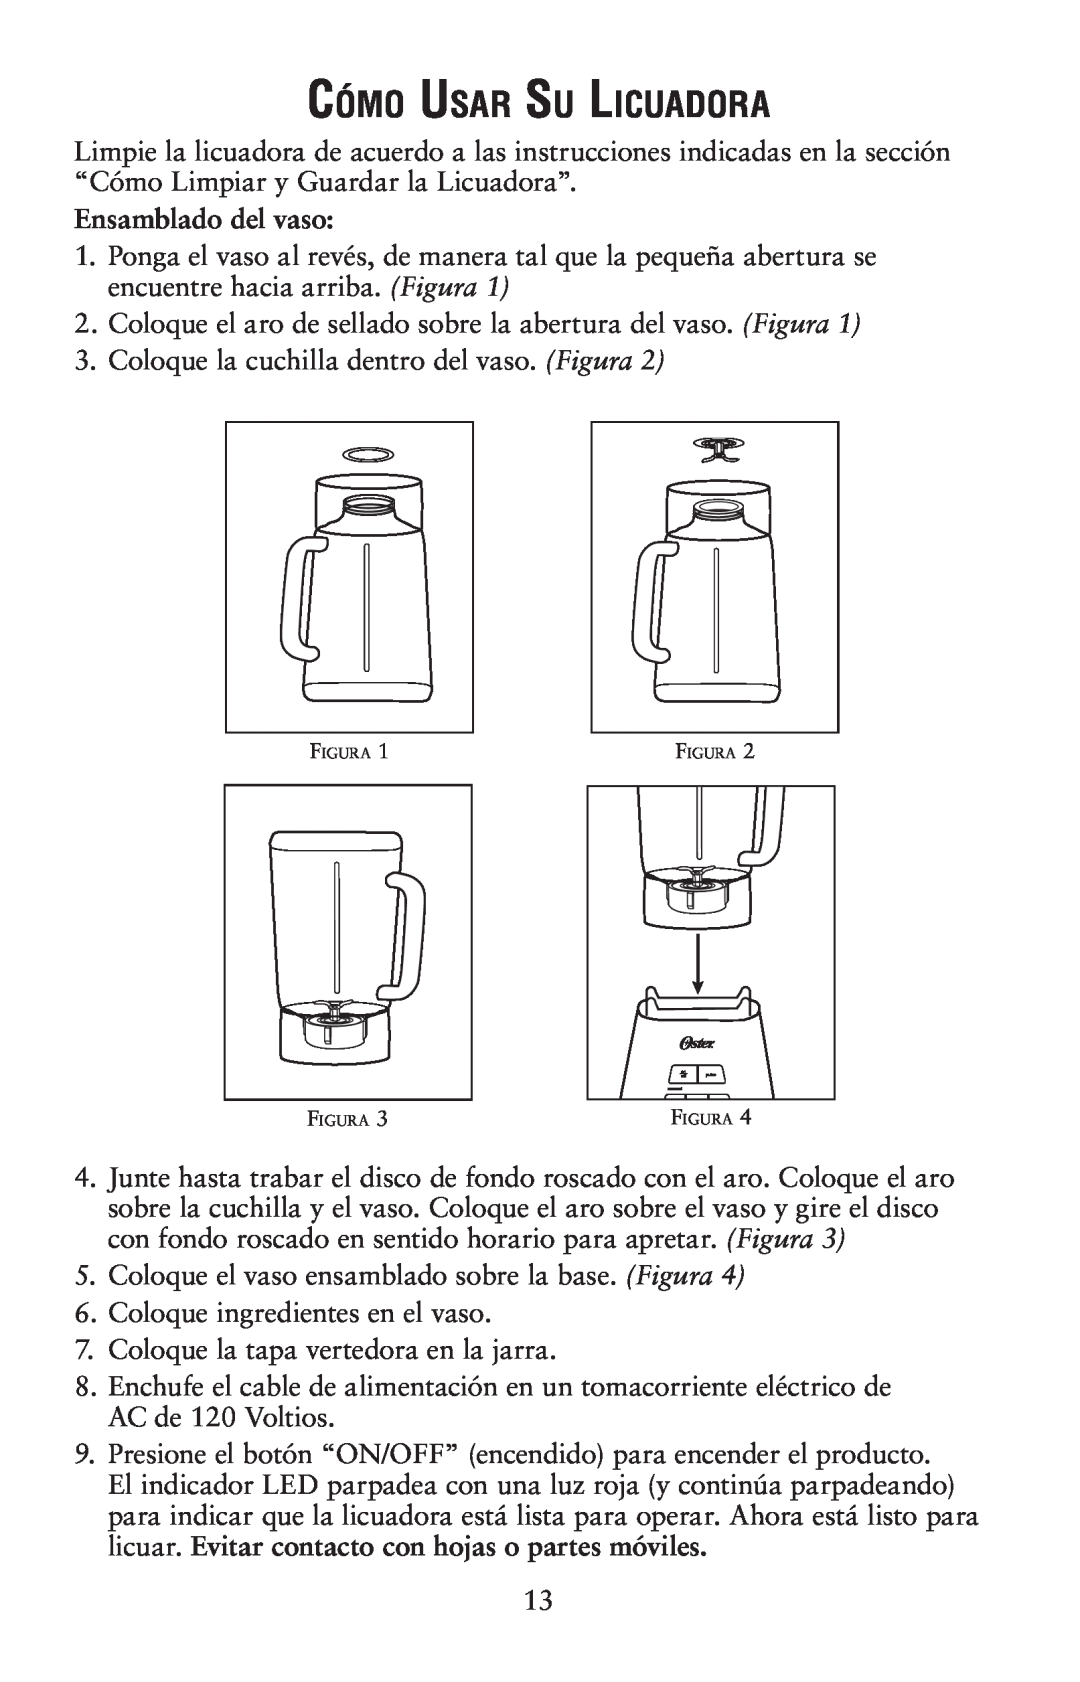 Oster 139846 user manual Cómo Usar Su Licuadora, Ensamblado del vaso 